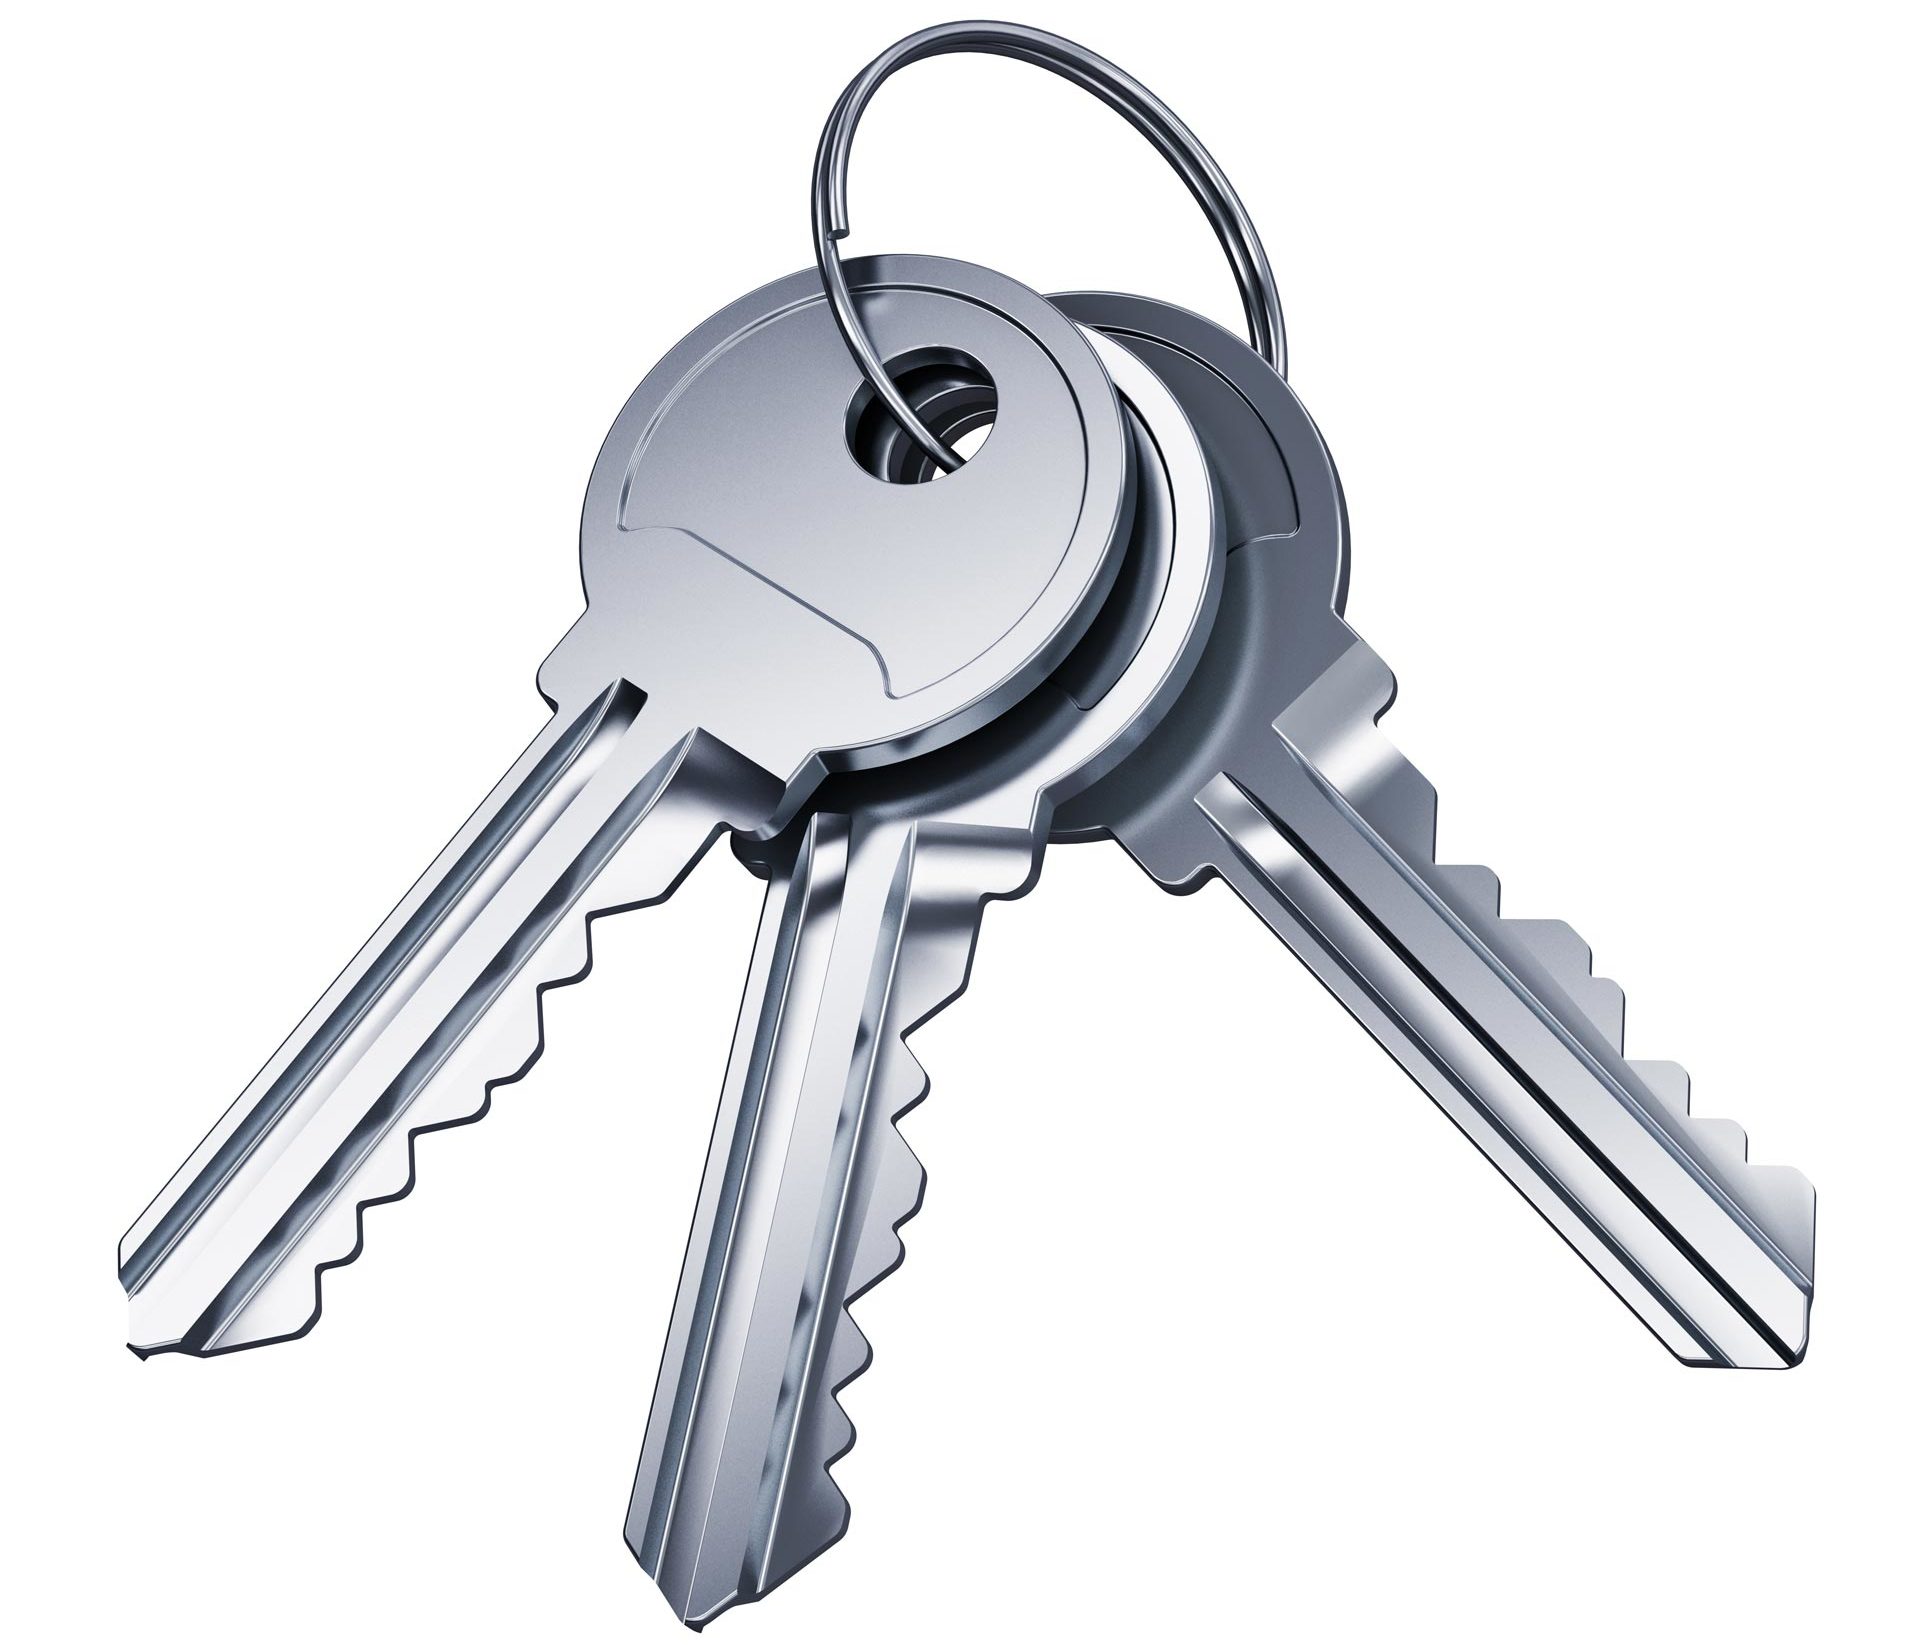 Three silver keys on a key ring